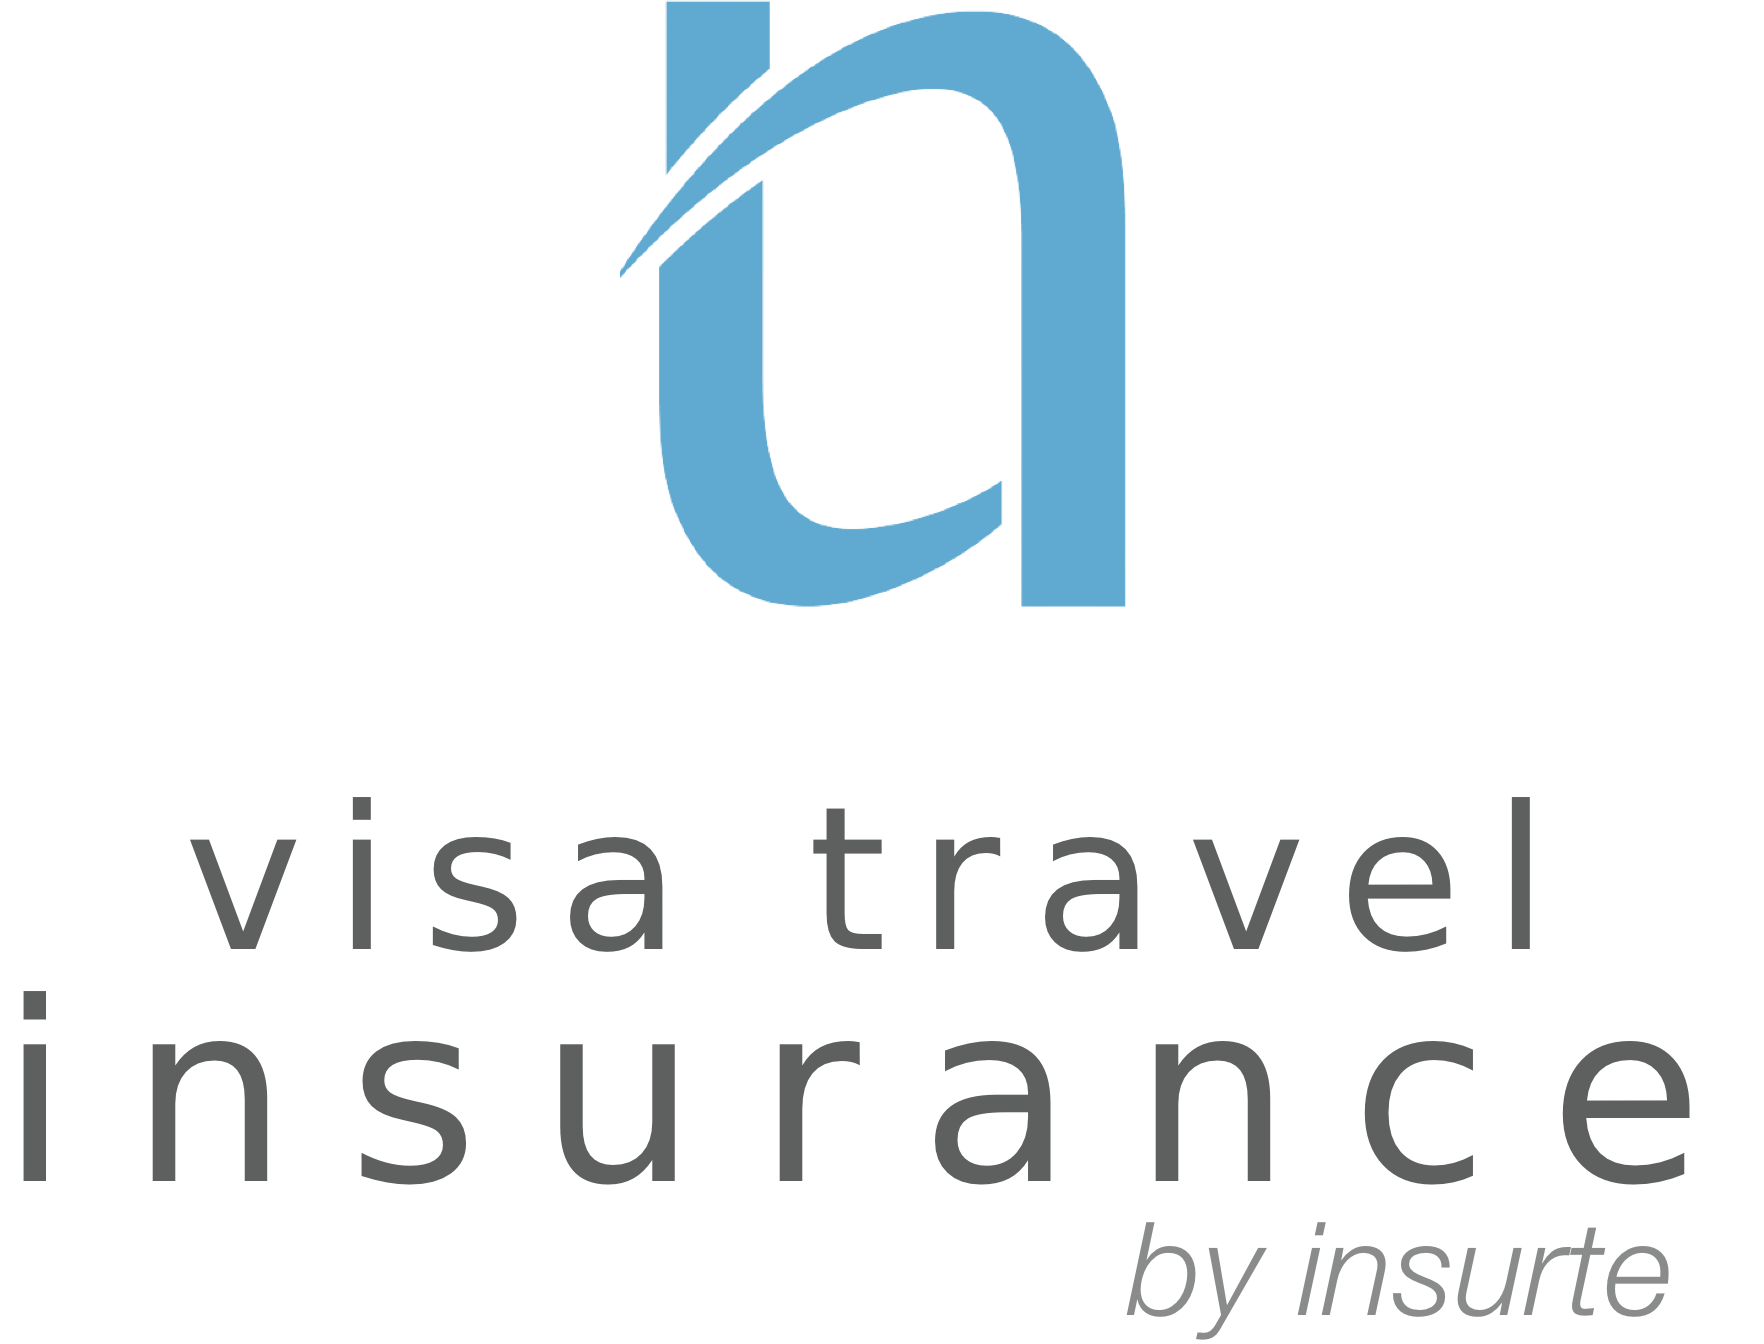 Insurte Visa Travel Insurance